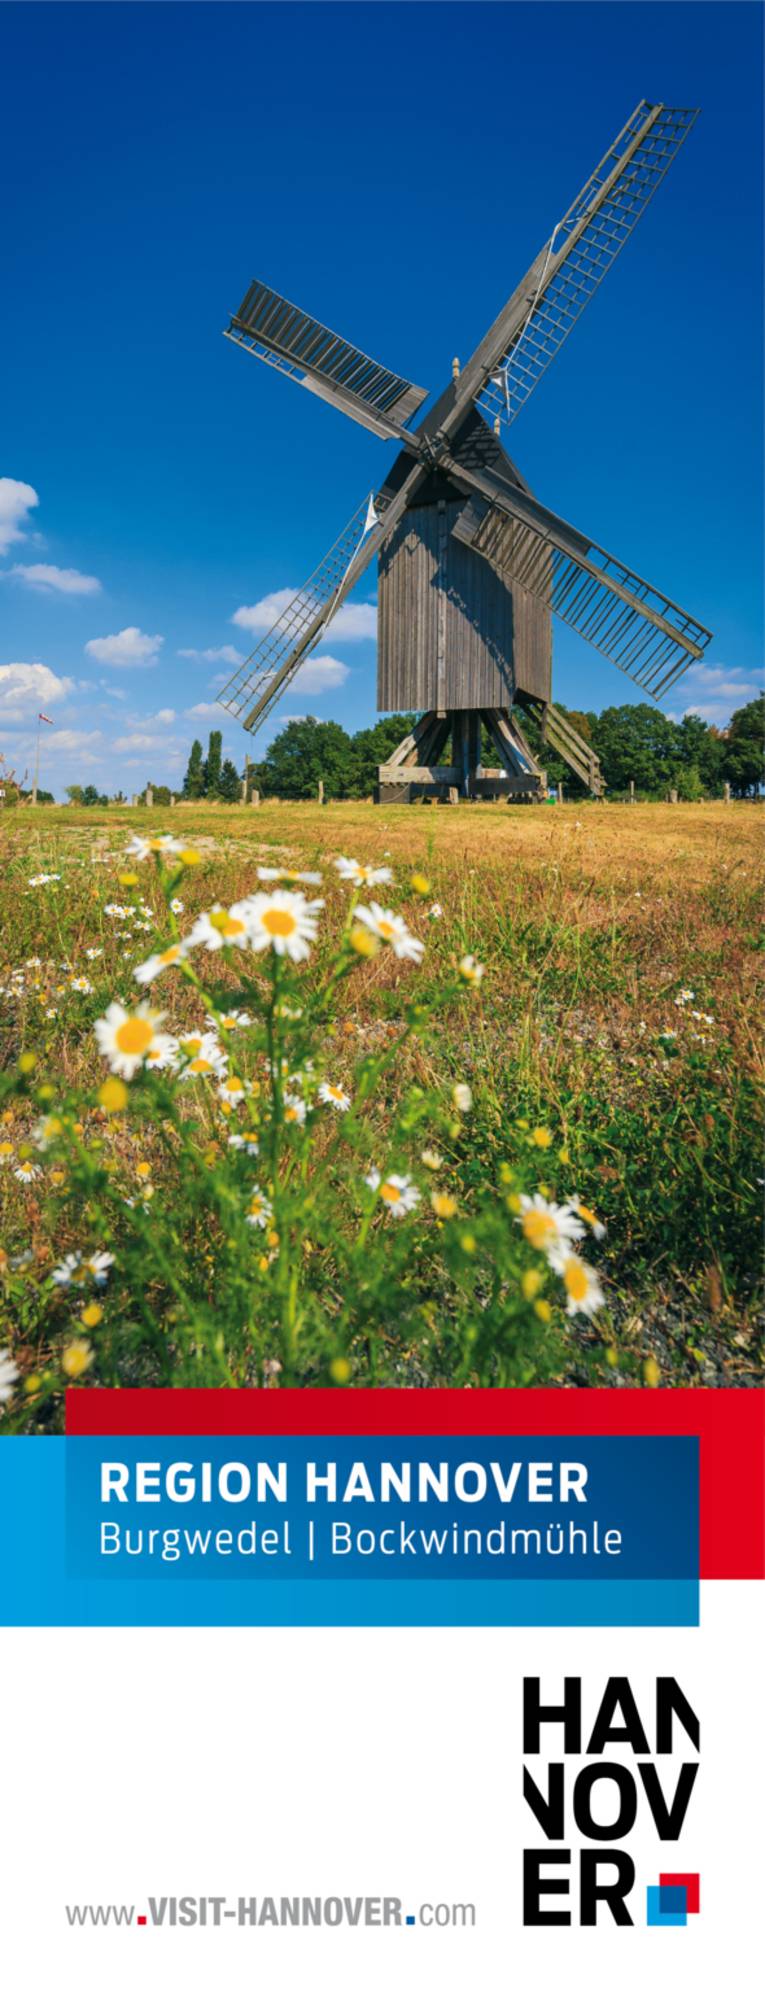 Burgwedel präsentiert sich mit einem Motiv der Bockwindmühle.